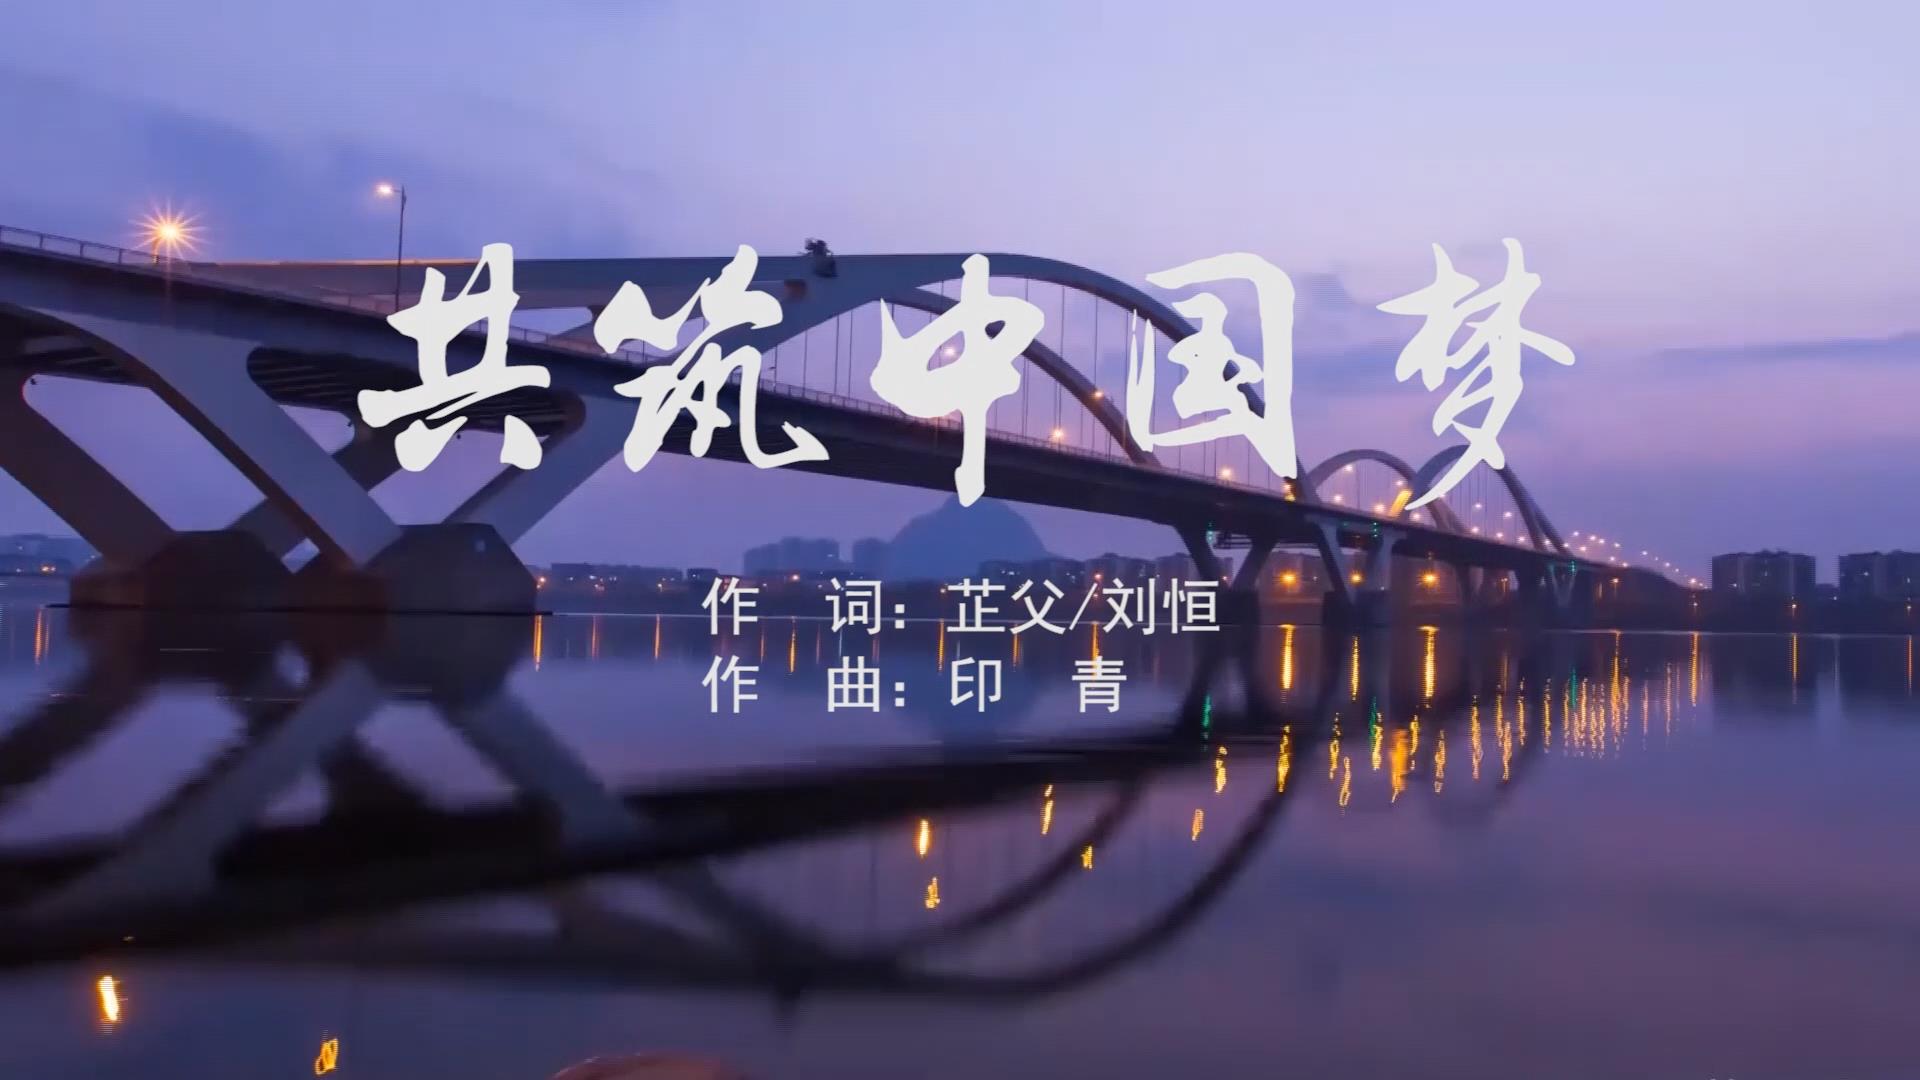 共筑中国梦 MV字幕配乐伴奏舞台演出LED背景大屏幕视频素材TV